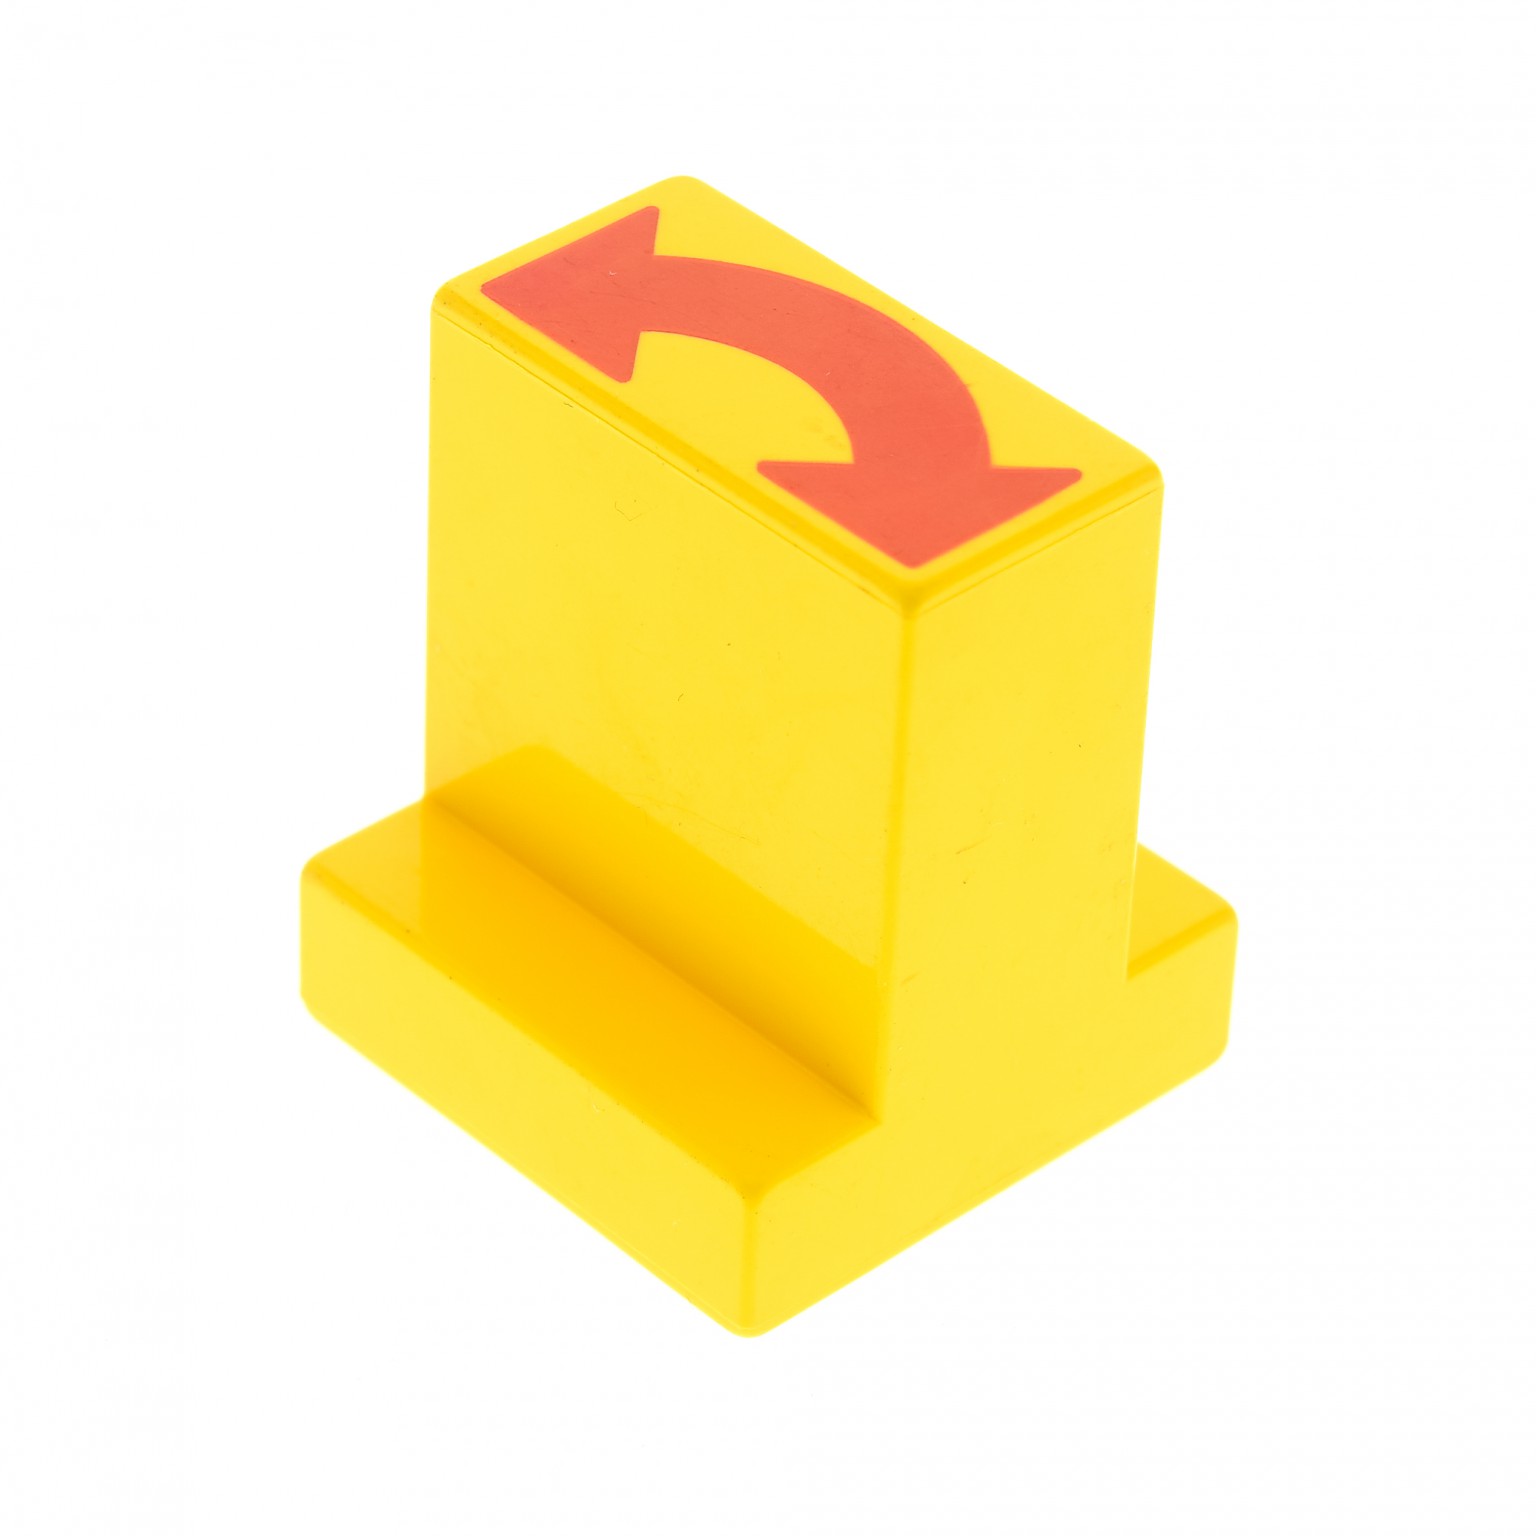 1x Lego Duplo Stellstein gelb 2x2 Pfeil Weiche Schiene Set 2745 9166 6442pb02